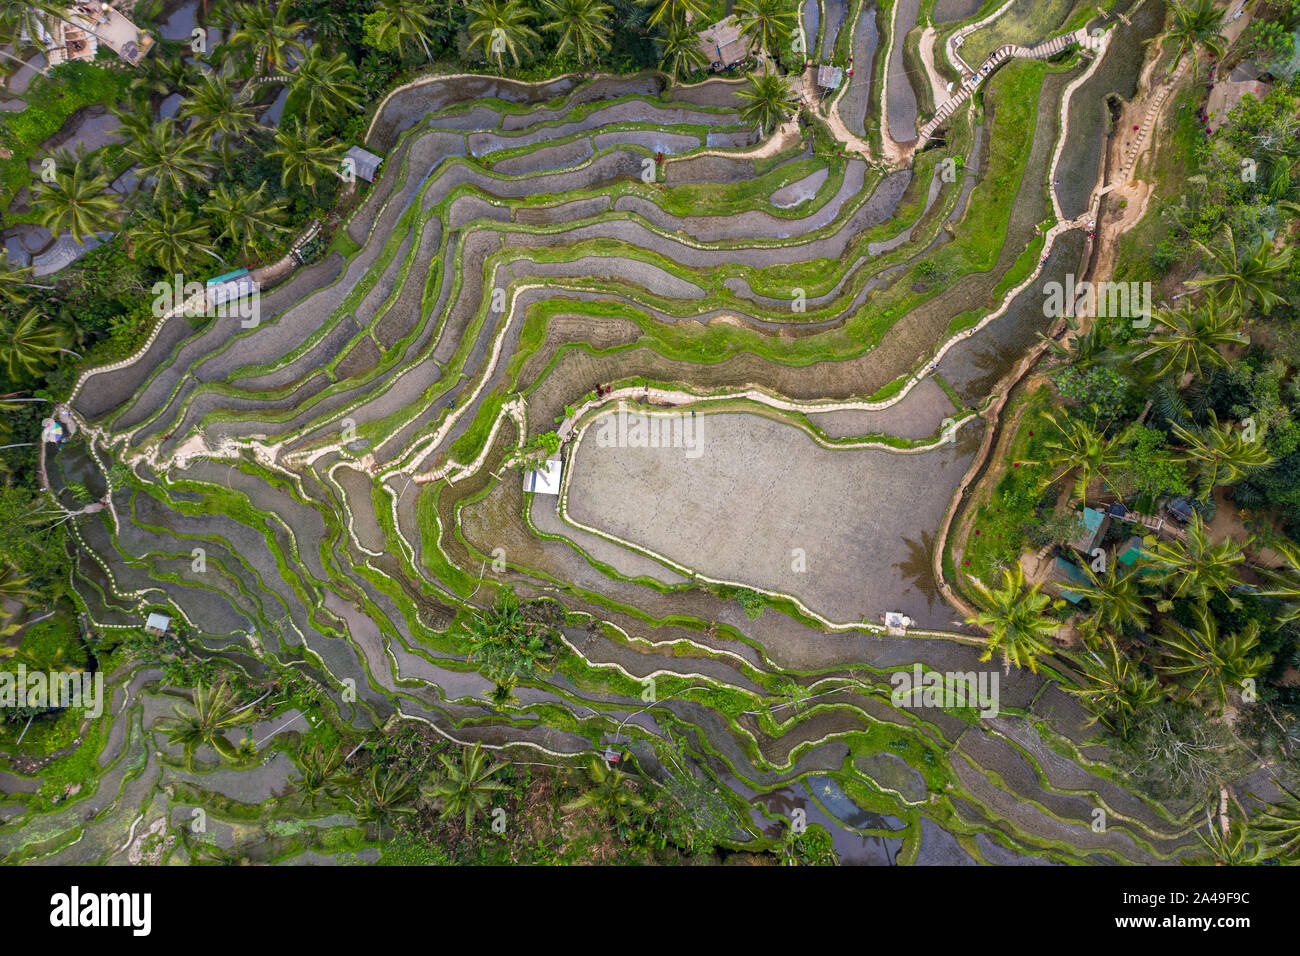 Antenne drone Bild von tegallalang Reis Reisfelder, in der Nähe von Ubud auf Bali, Indonesien Stockfoto